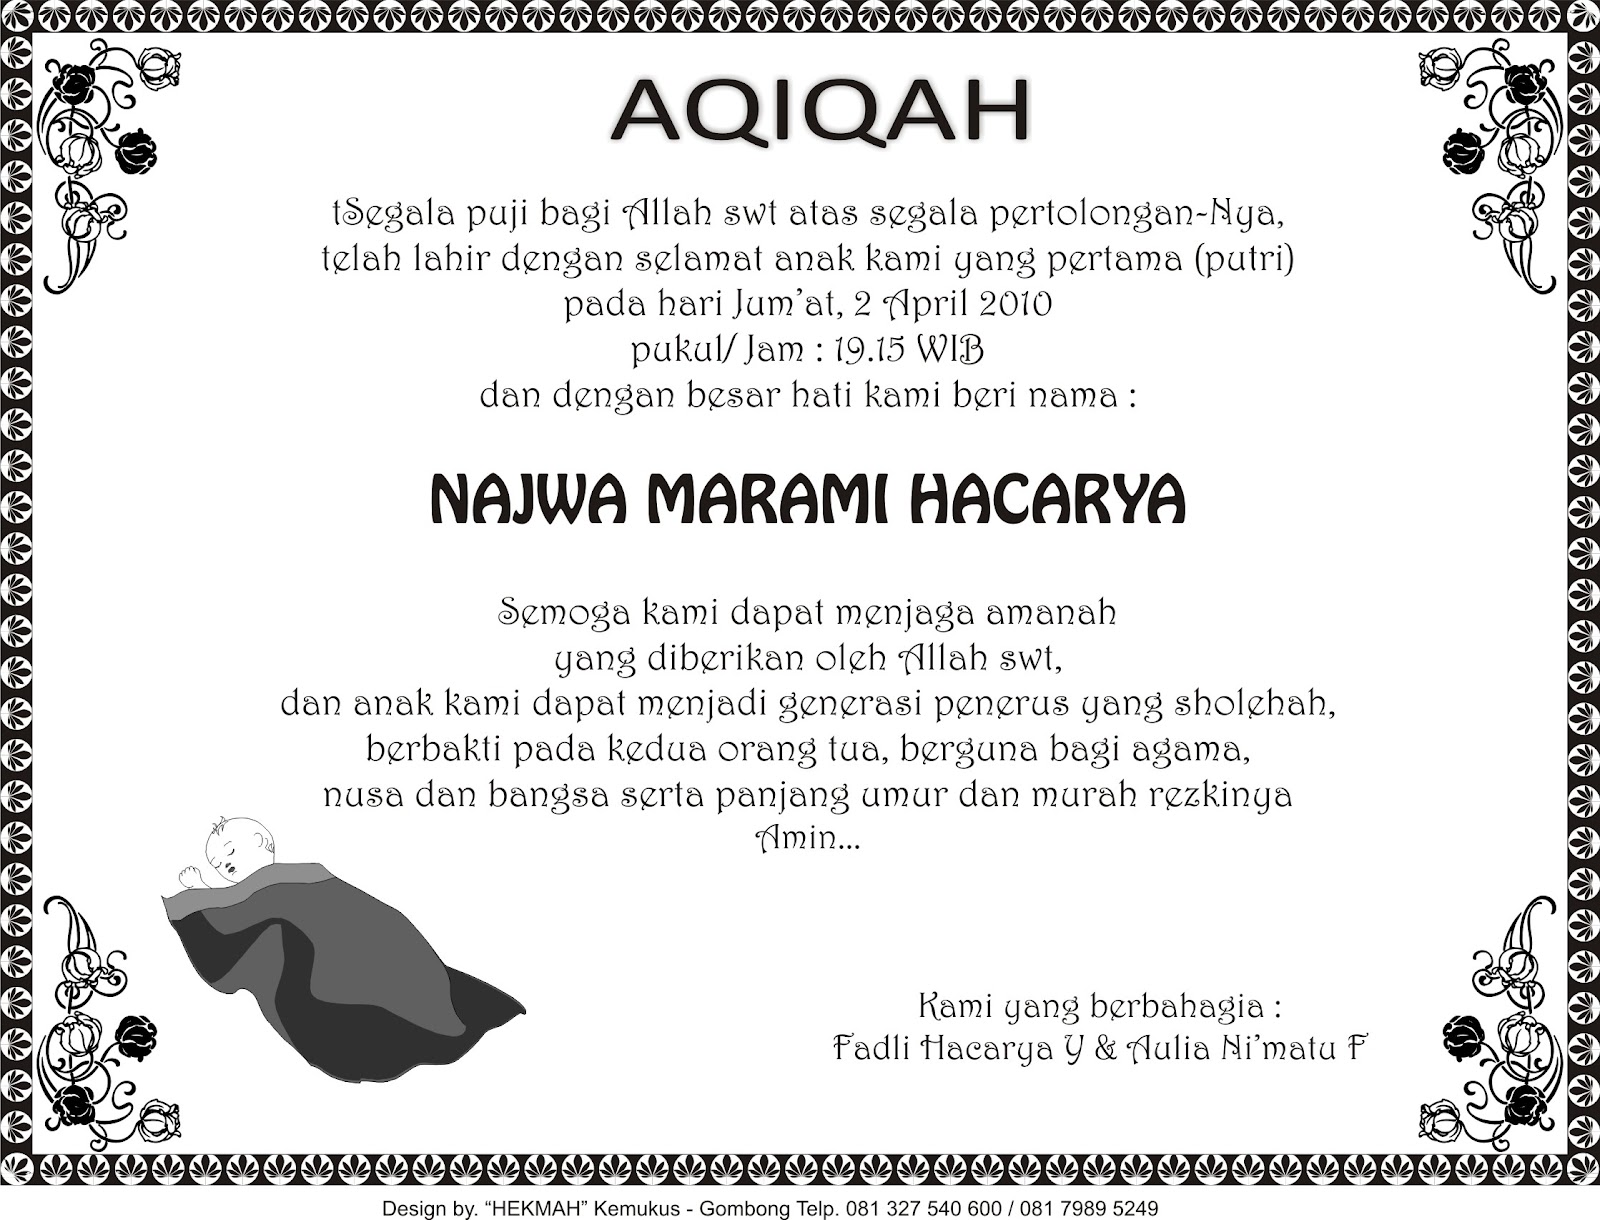  kartu  ucapan  aqiqah bisa di edit wood scribd indo